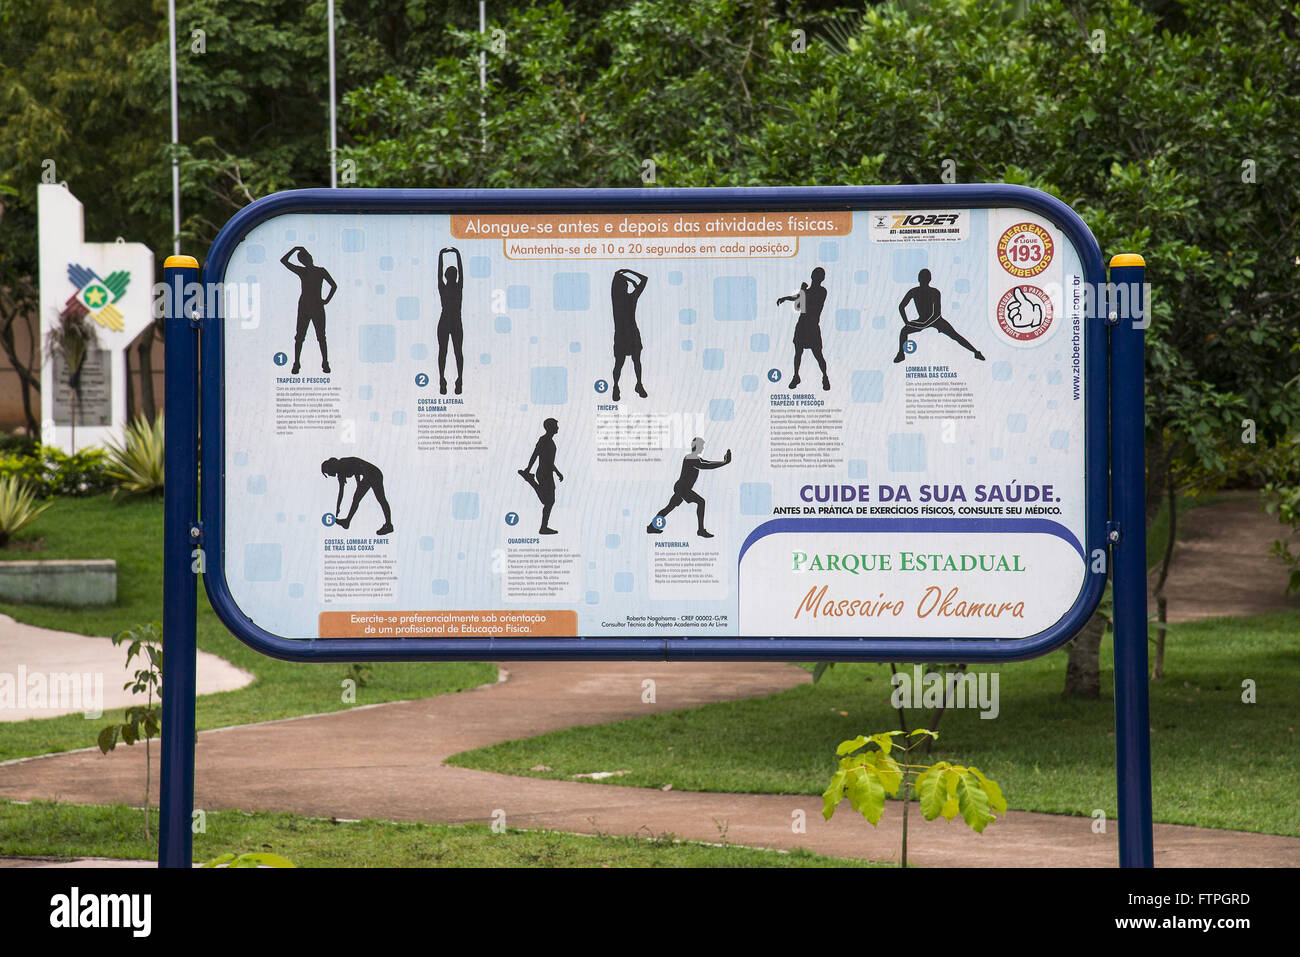 Pannello con orientamento a praticare ginnastica al parco dello stato Massairo Okamura Foto Stock